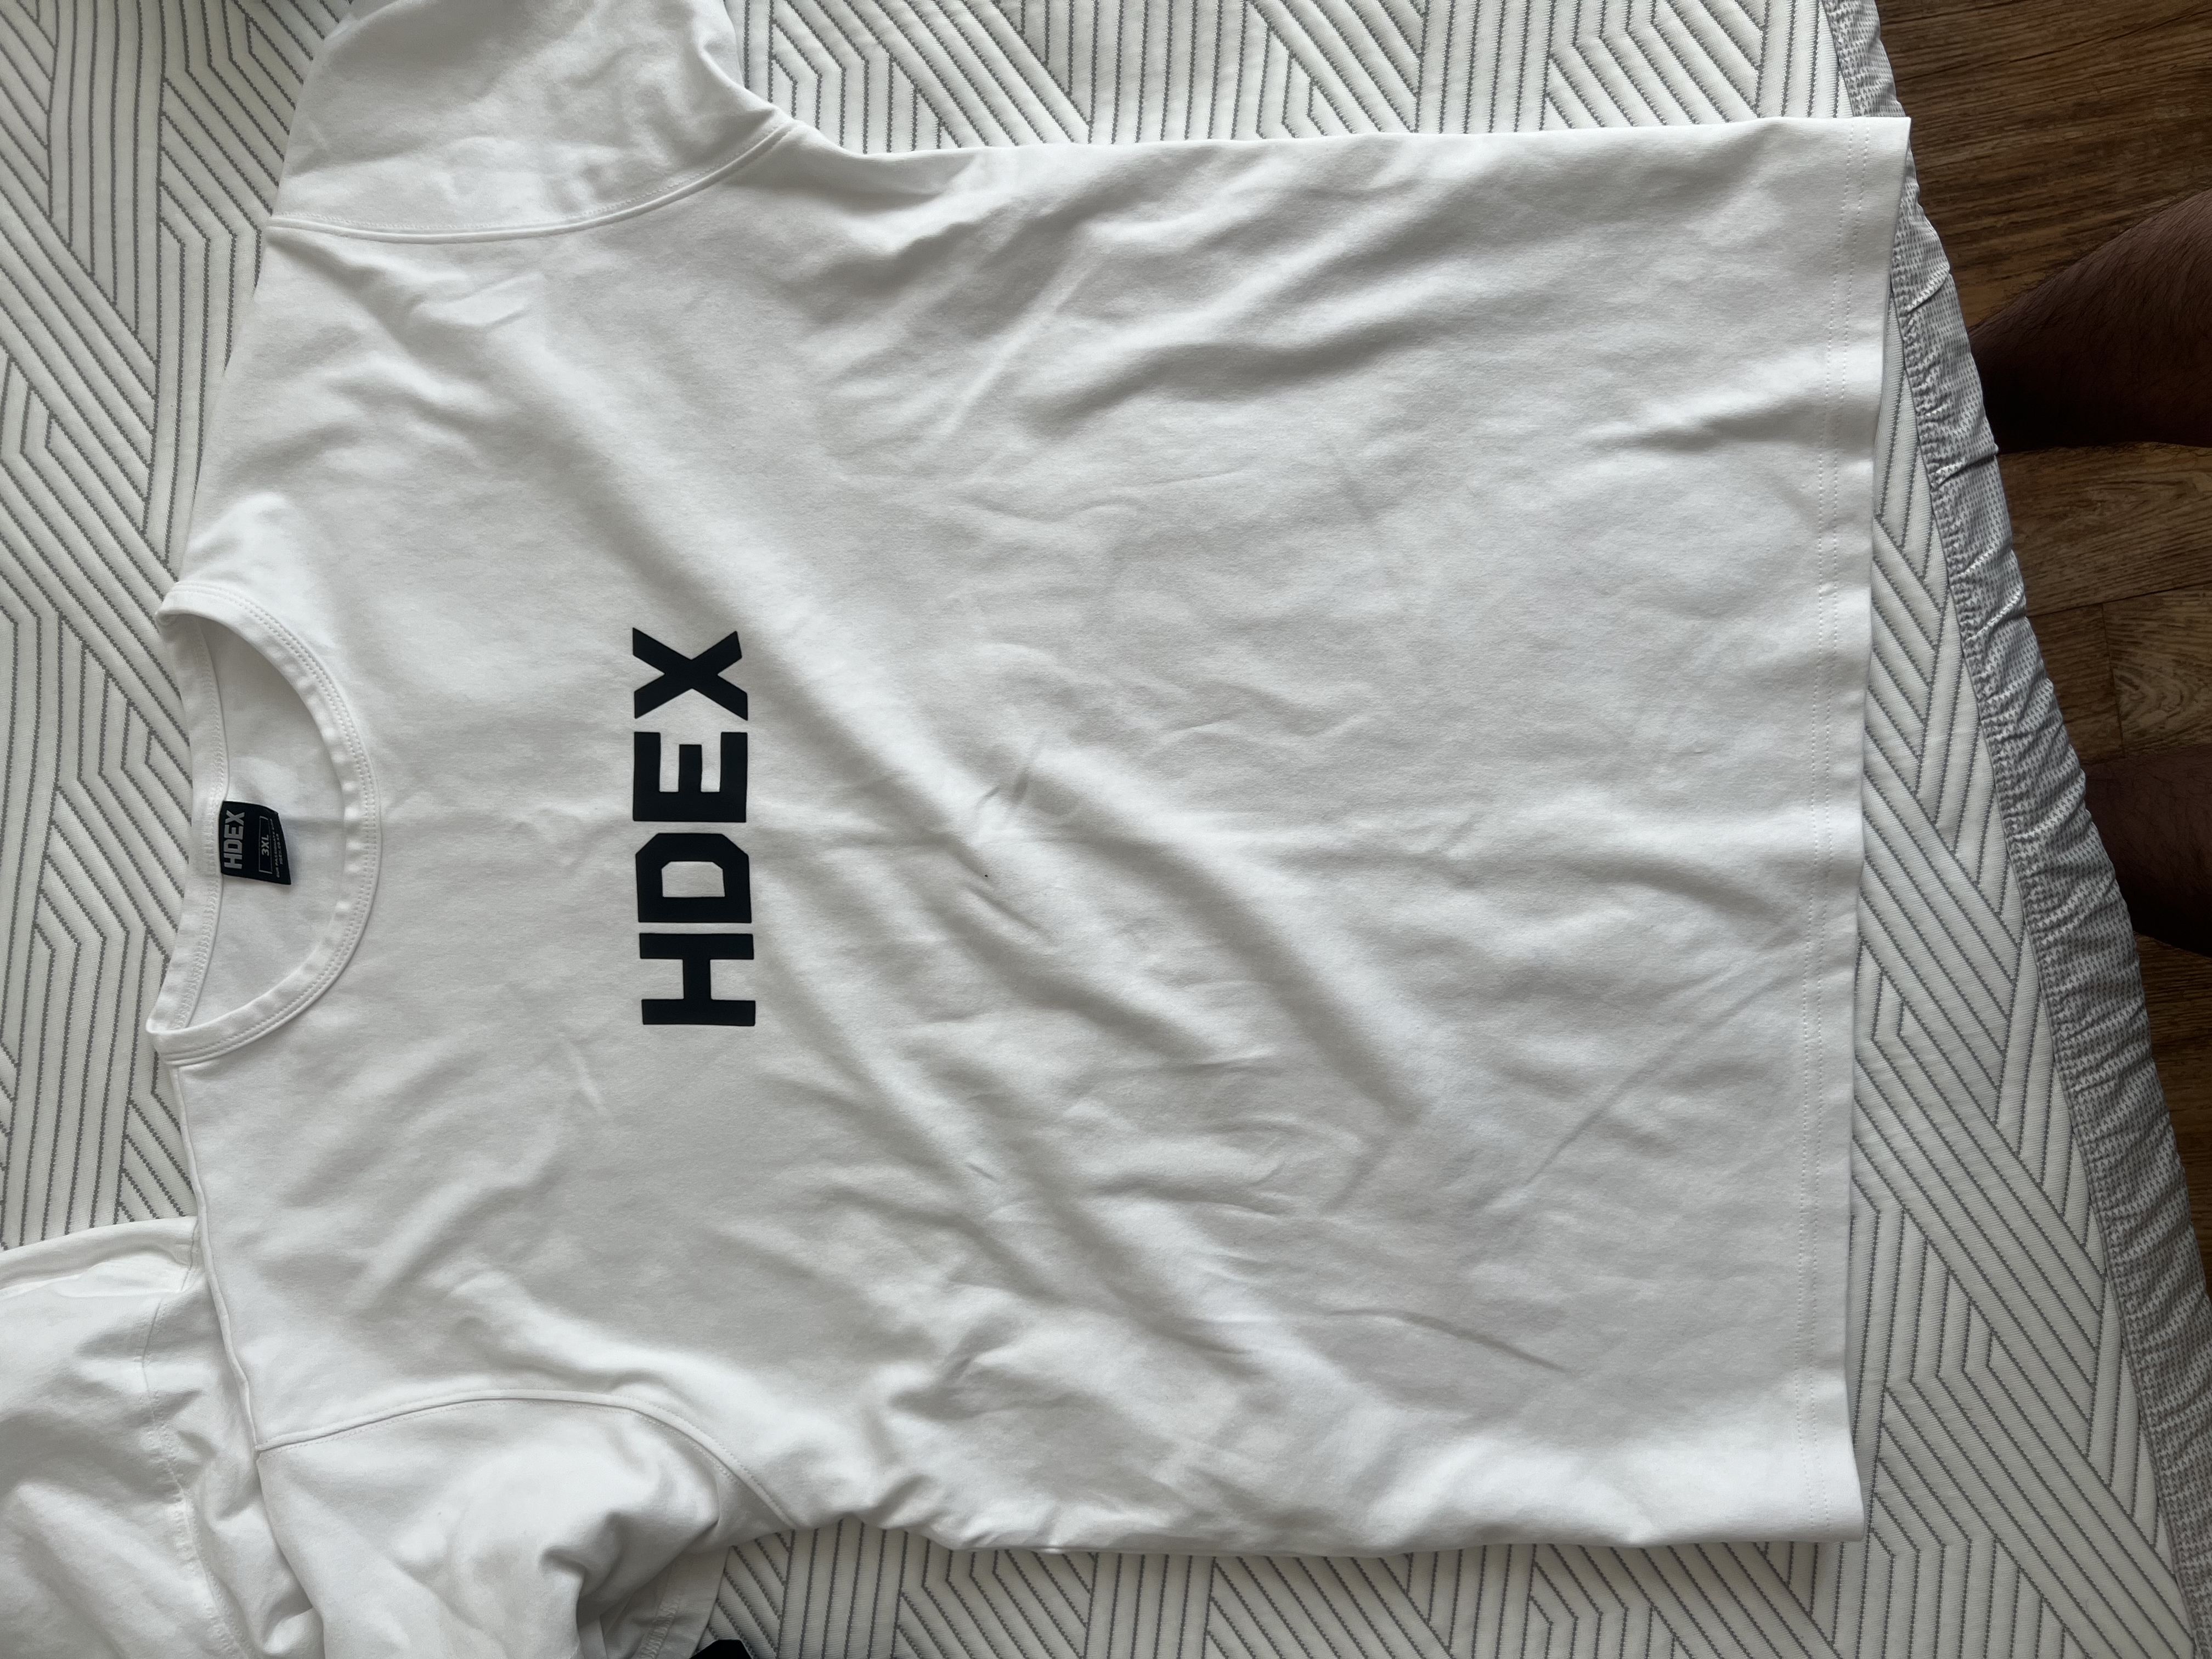 hdex 메인로고 머슬핏 반팔티(검은색, 흰색)